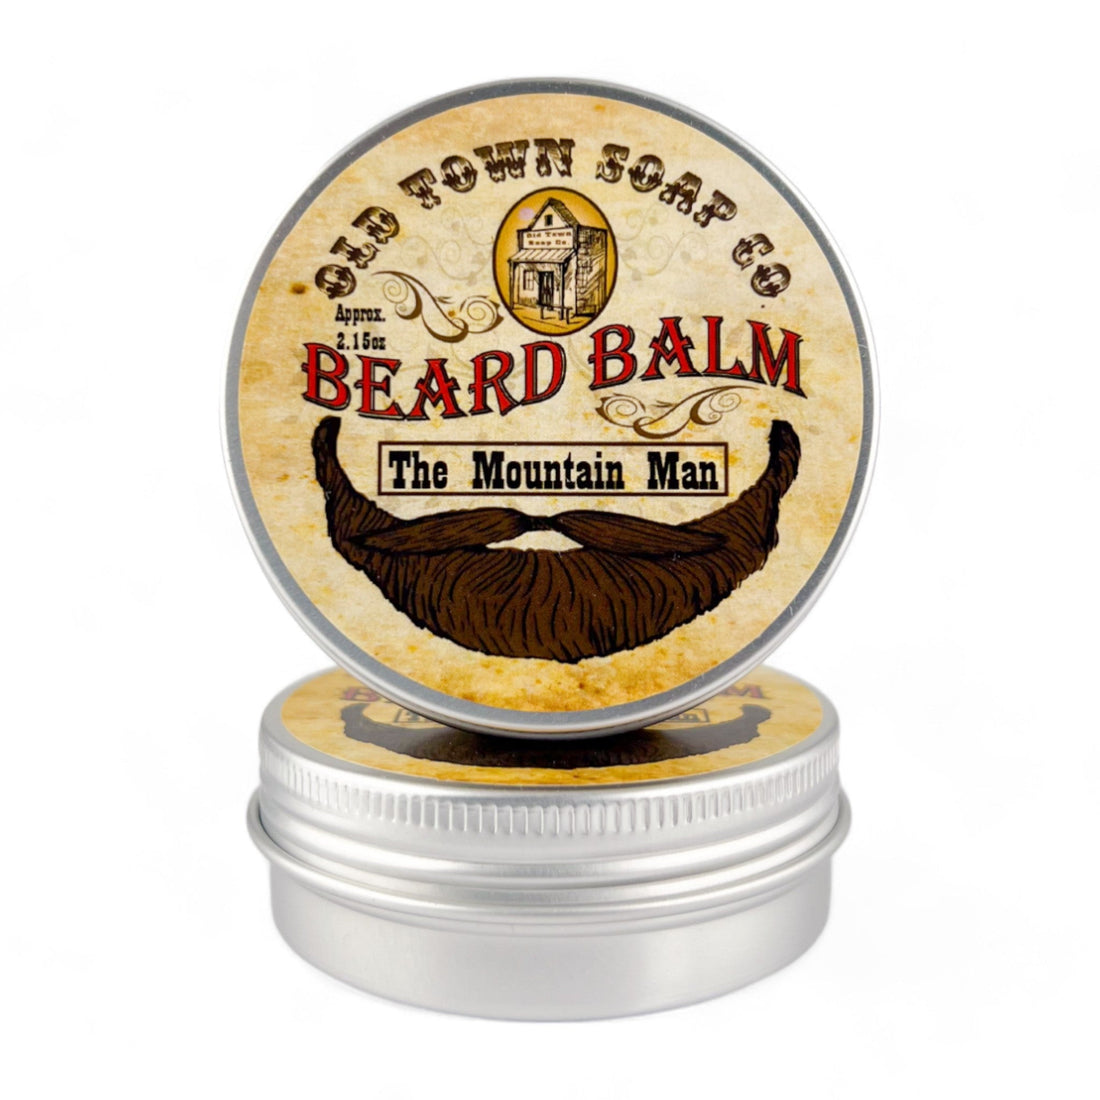 The Mountain Man Beard Balm - Old Town Soap Co.